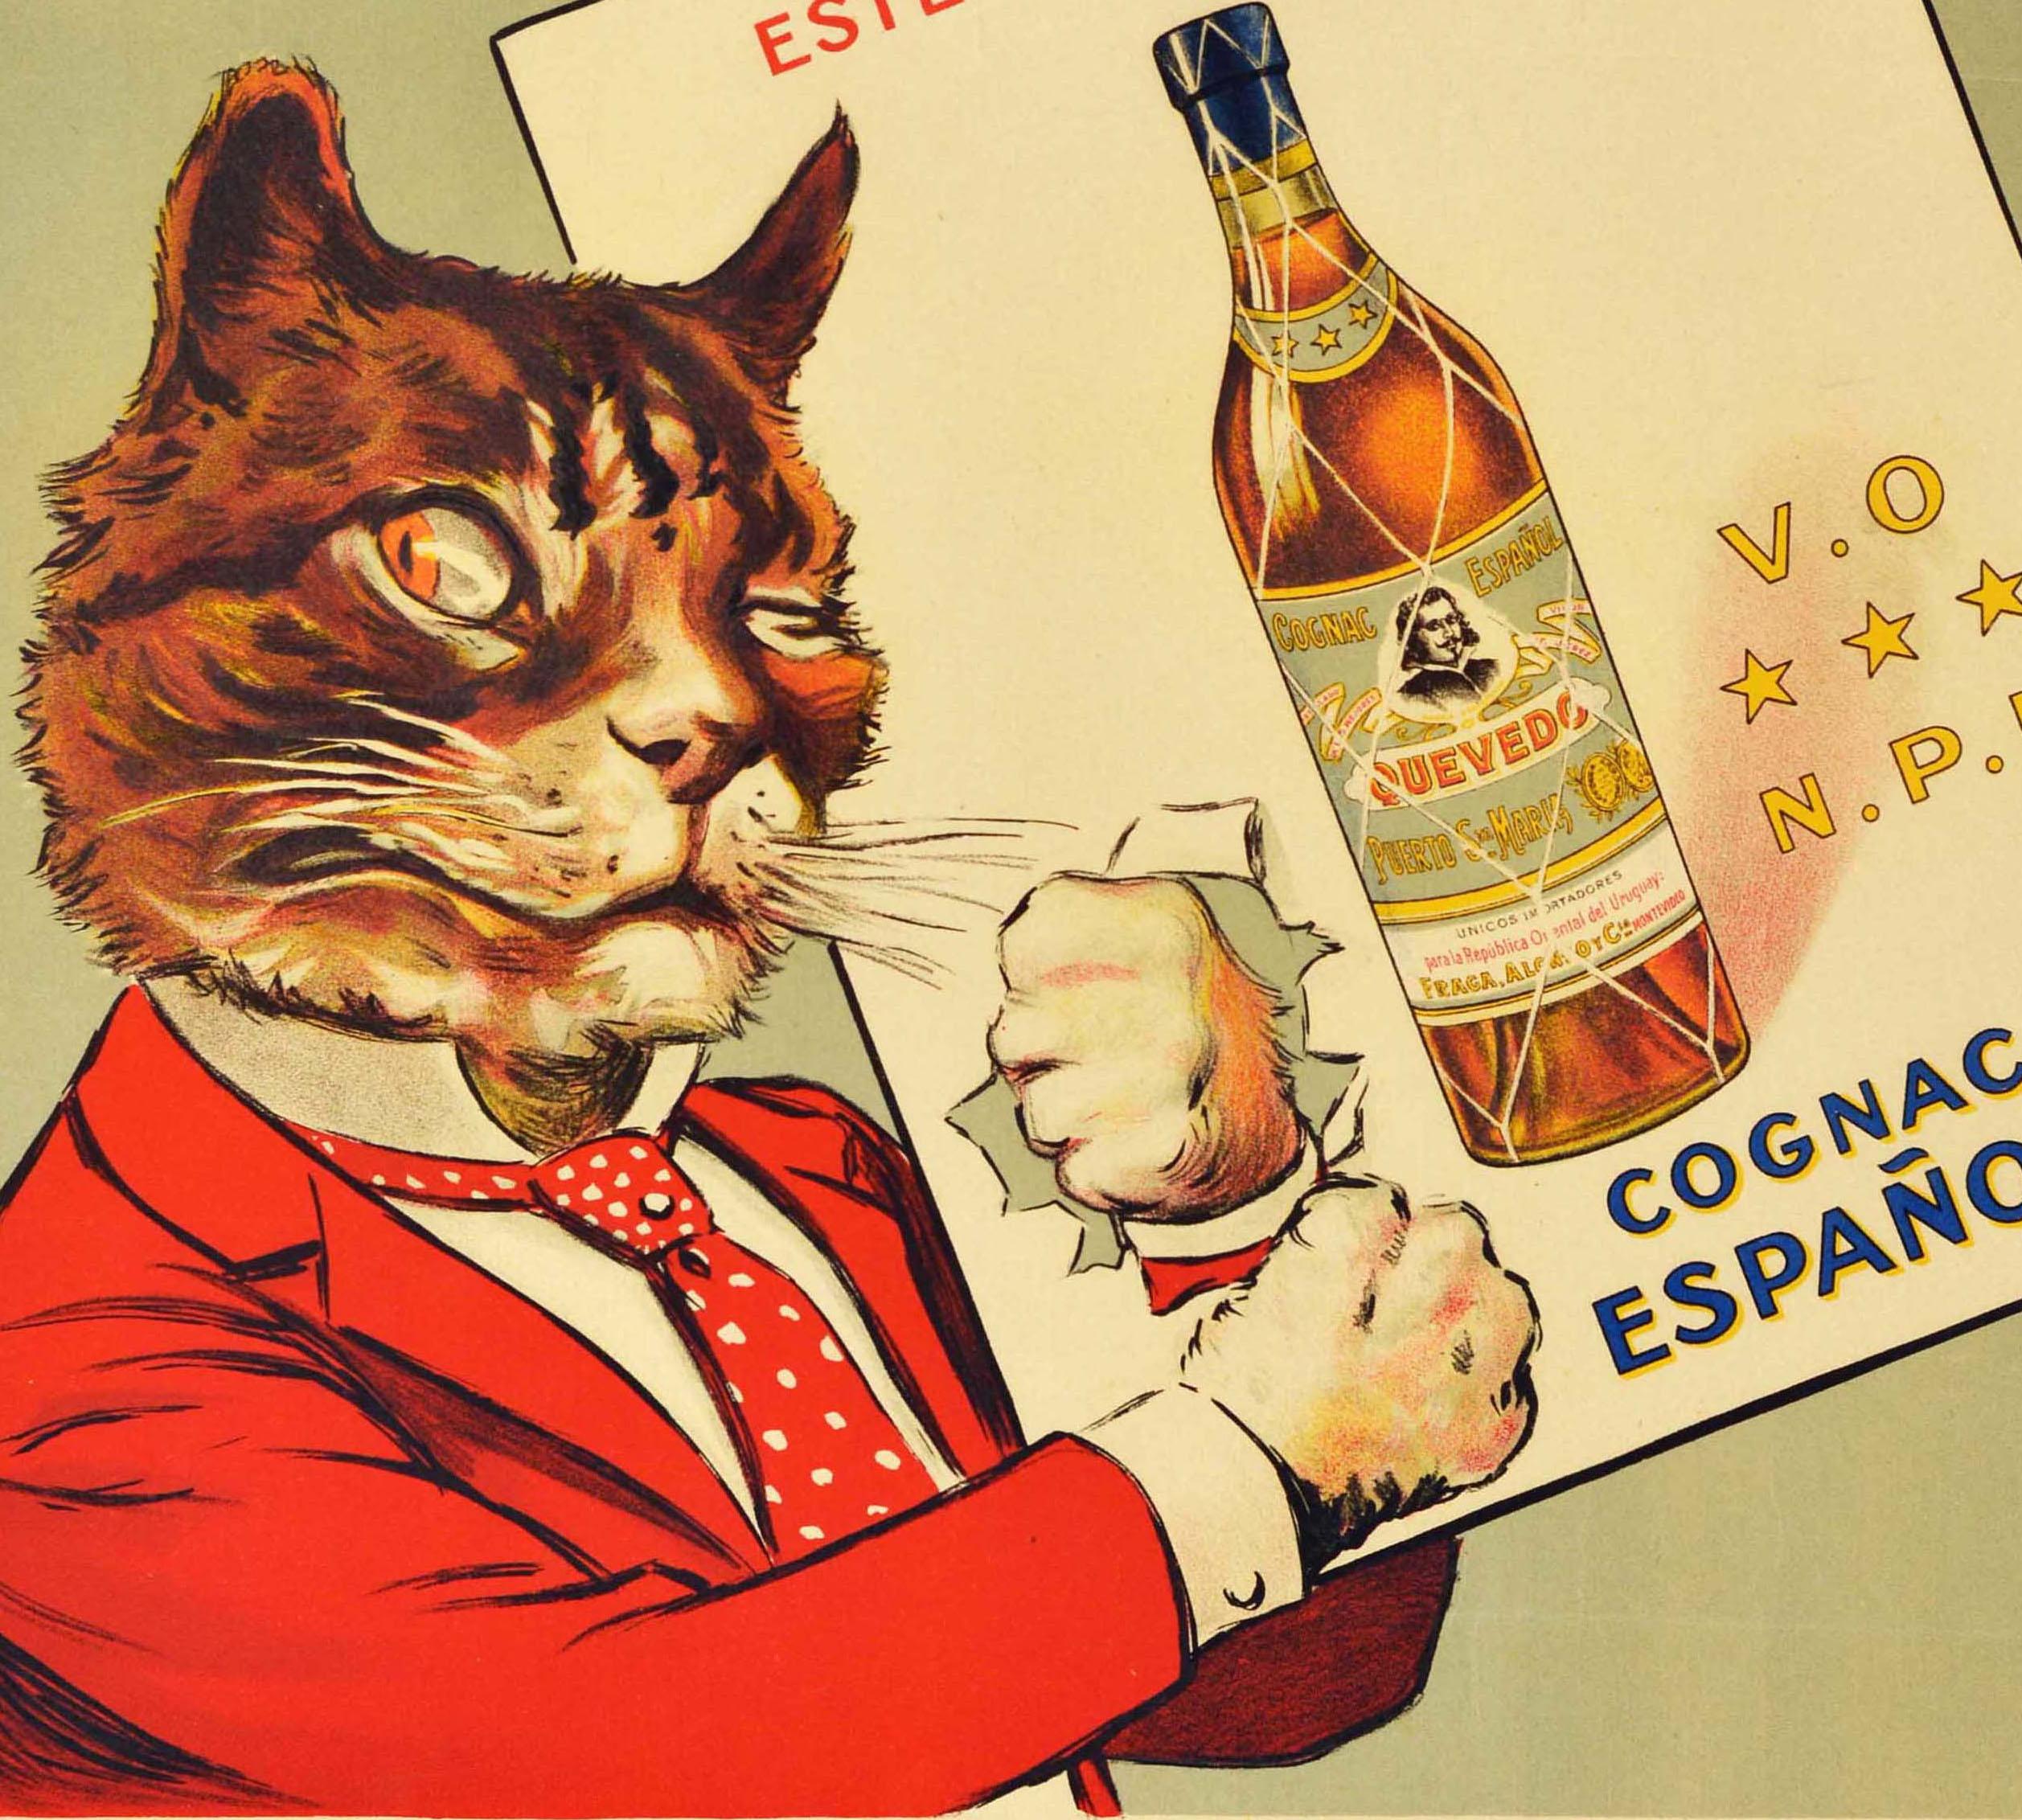 Affiche publicitaire originale et ancienne pour le Cognac Espanol Quevedo, représentant un chat élégant en costume rouge et cravate à pois rouges et blancs, qui fait un clin d'œil au spectateur alors qu'il perfore un papier montrant une bouteille de